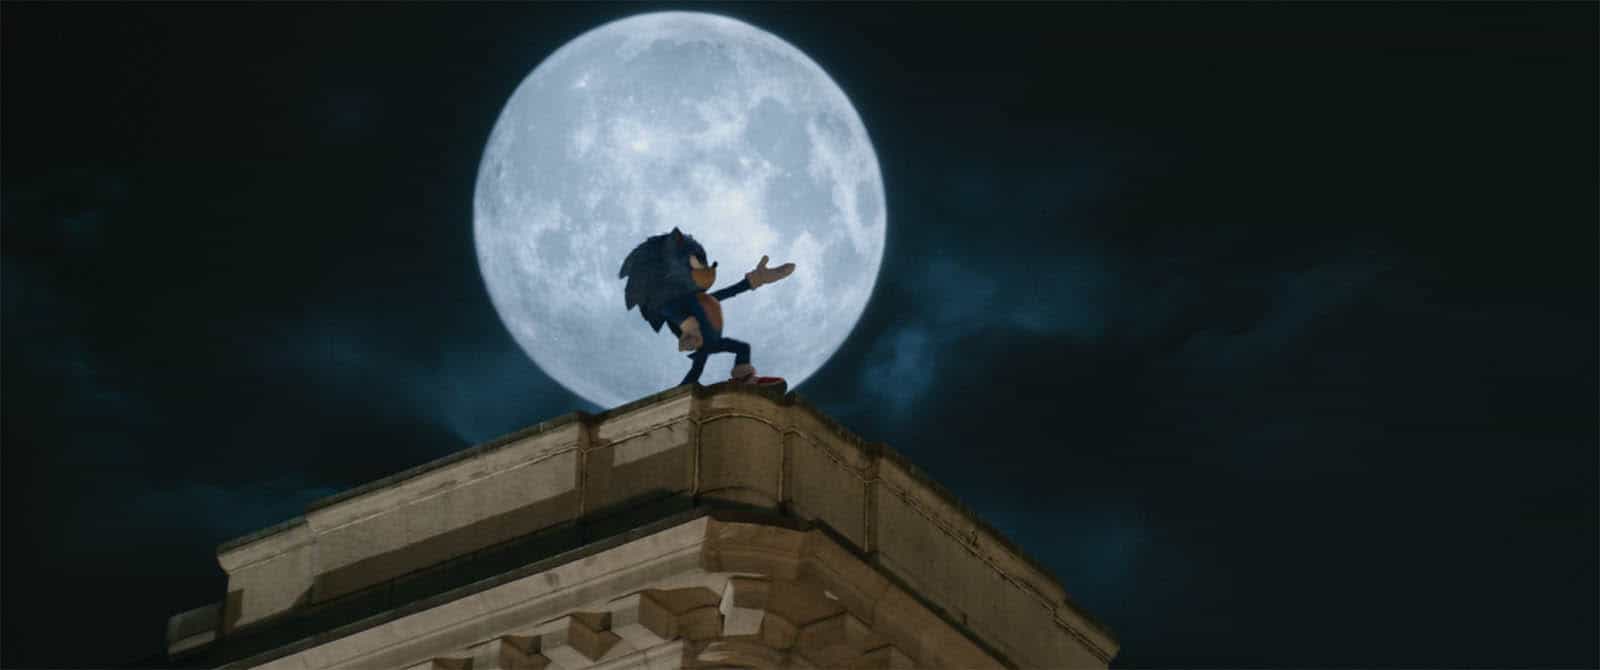 Sonic 2: veja sinopse, elenco e dubladores do filme disponível na